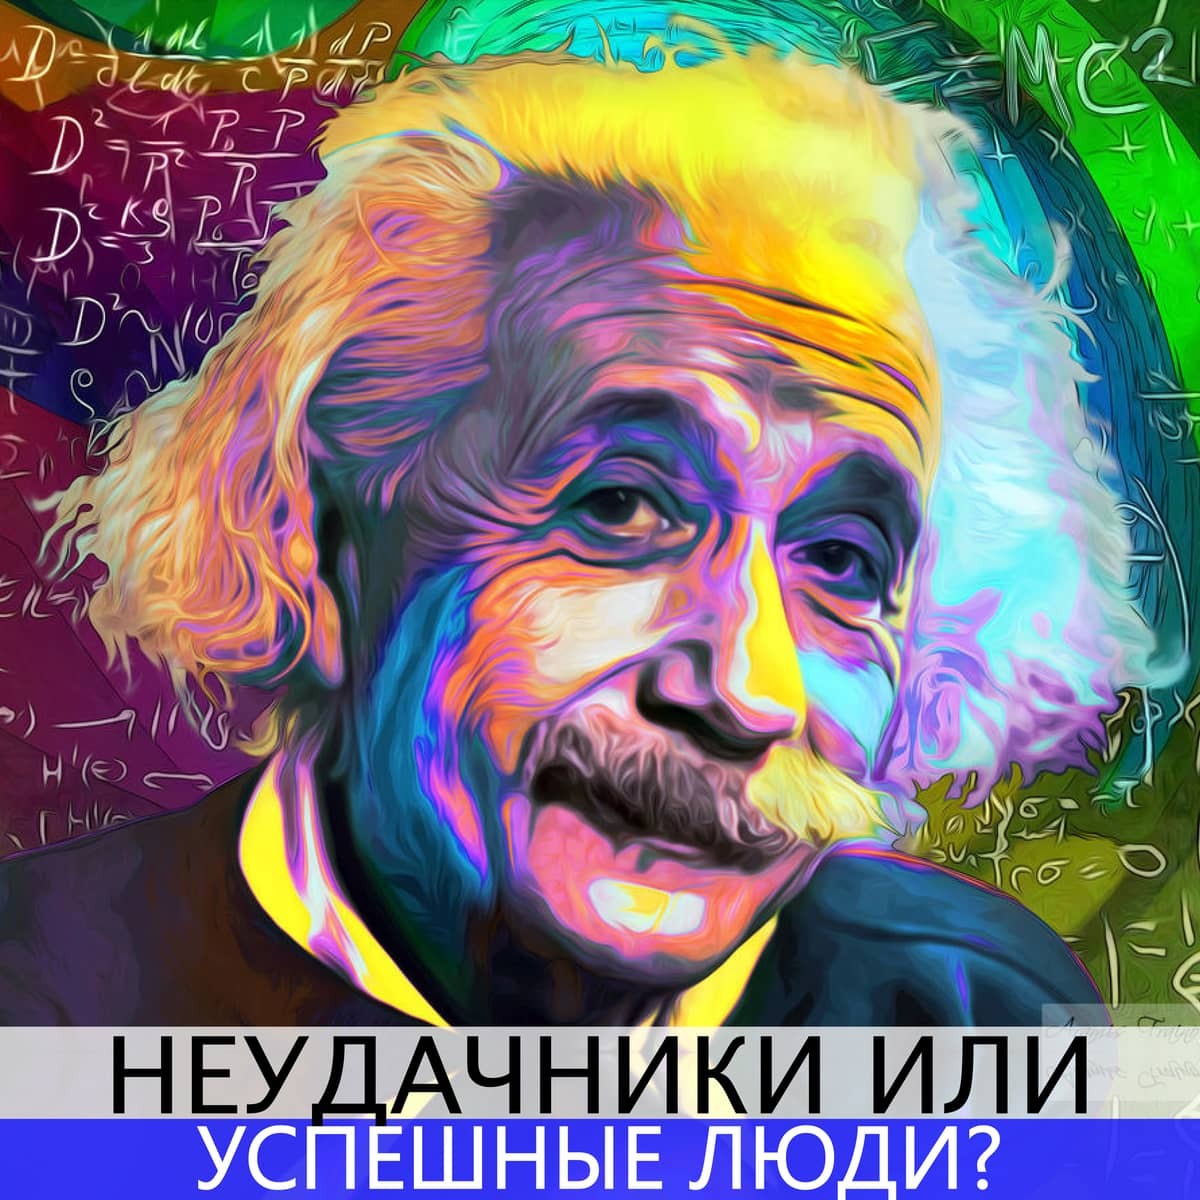 Каждый гениален. Эйнштейн цветной портрет. Эйнштейн портрет в цвете.